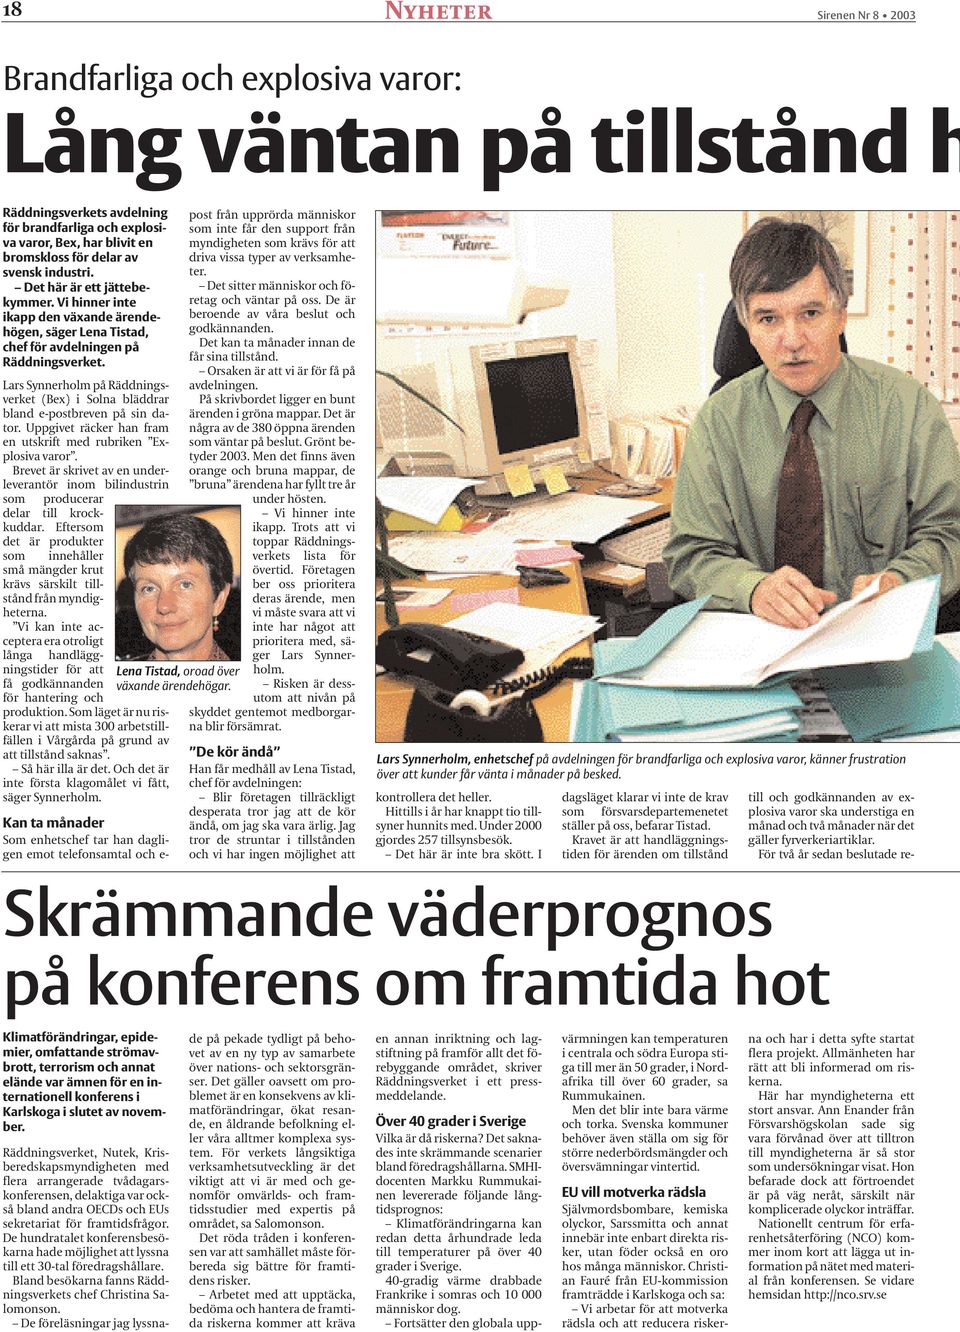 Lars Synnerholm på Räddningsverket (Bex) i Solna bläddrar bland e-postbreven på sin dator. Uppgivet räcker han fram en utskrift med rubriken Explosiva varor.